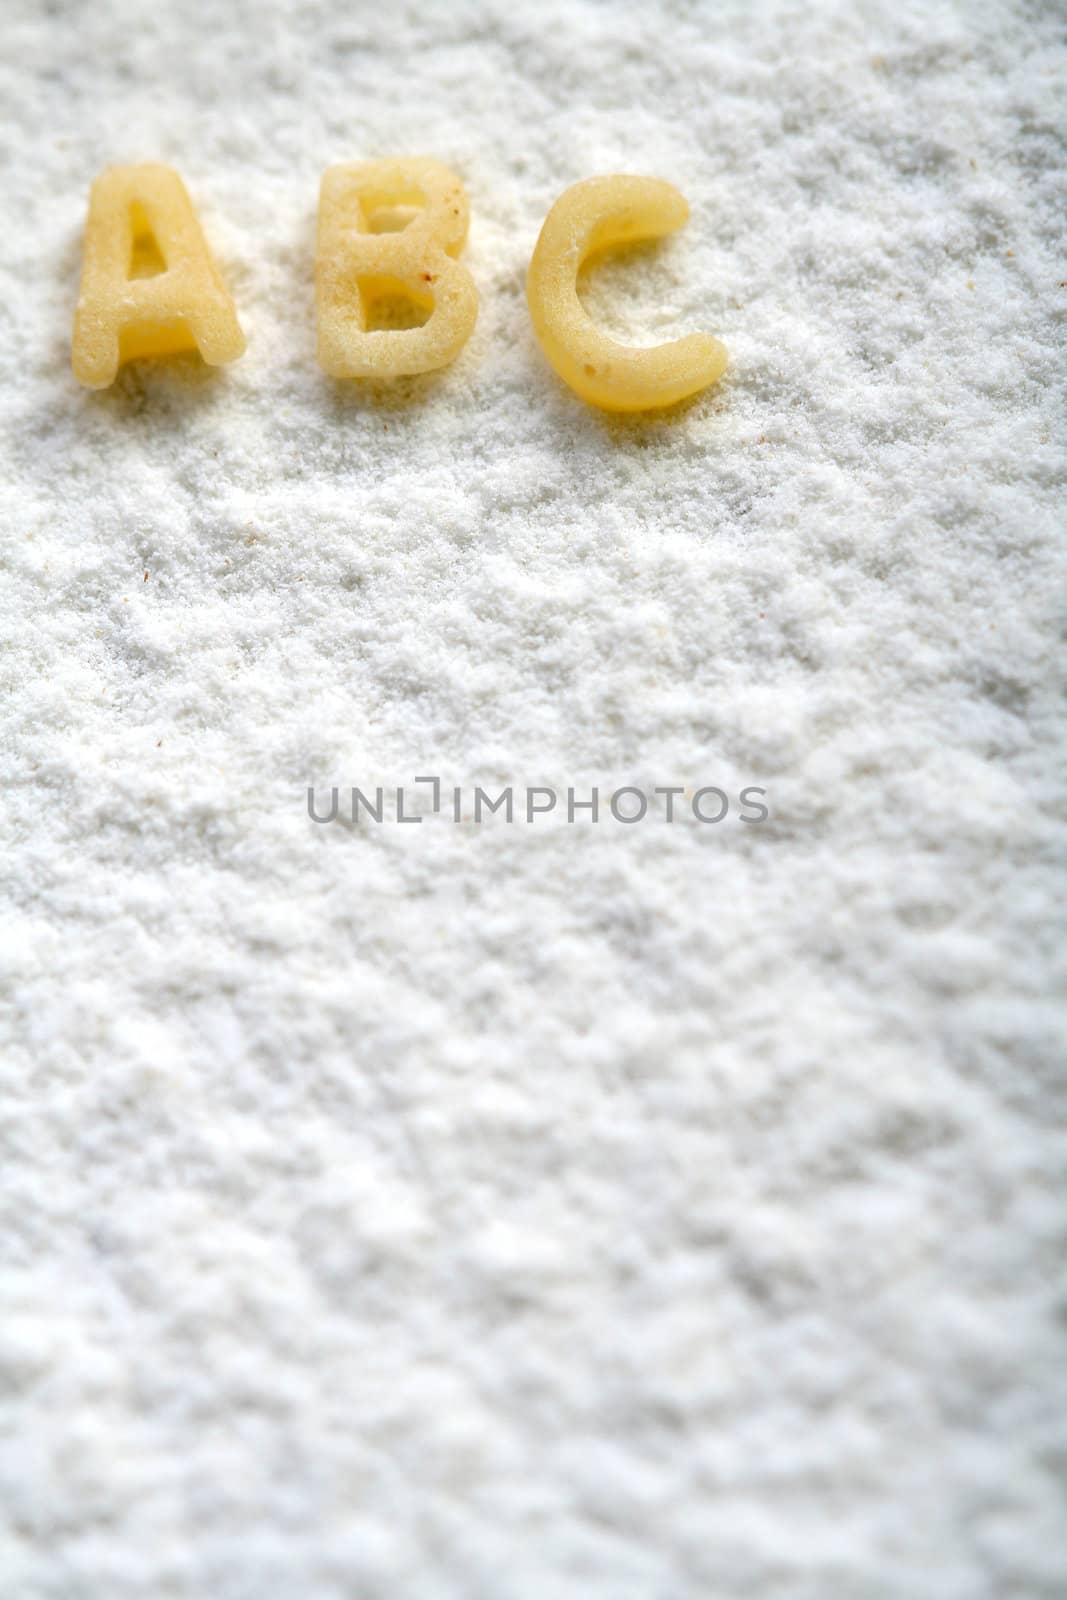 Eatable alphabet on flour, education by parrus